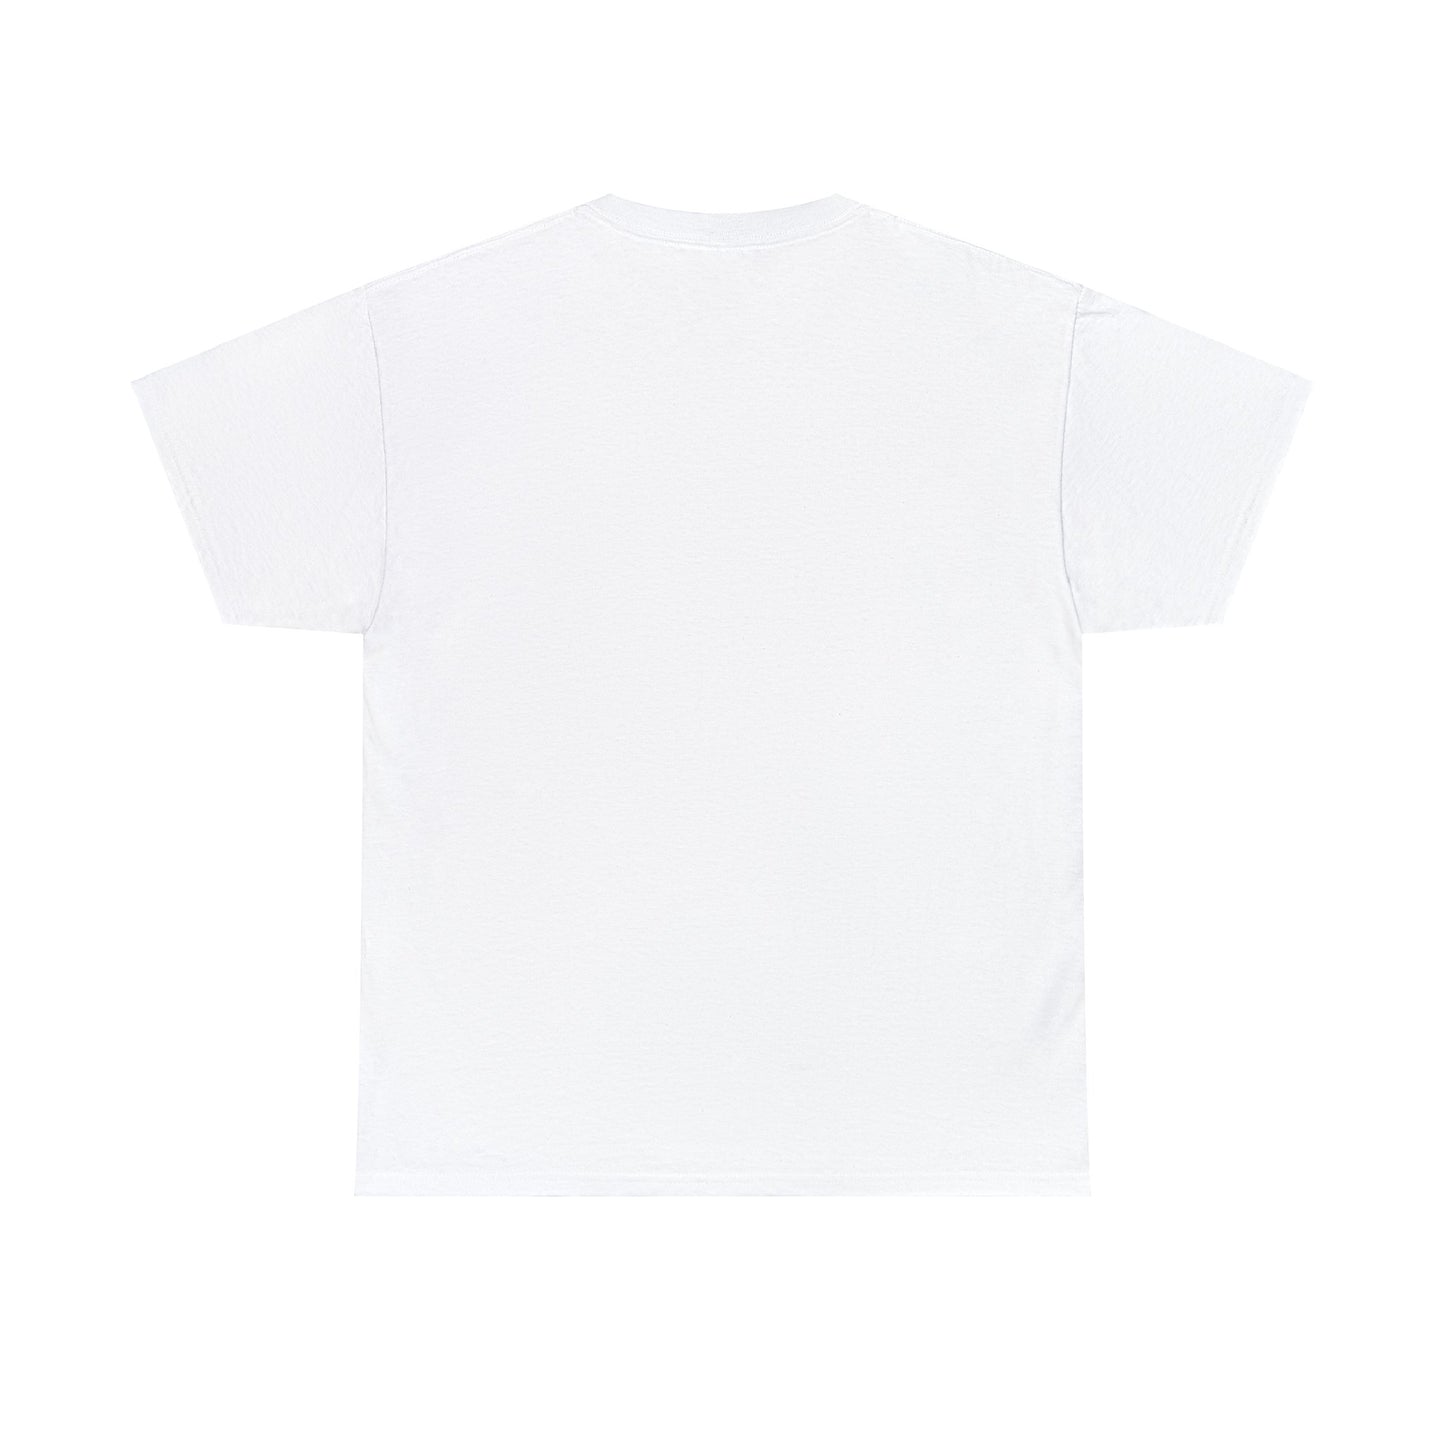 Tech - Classic Font - Men's Heavy Cotton T-Shirt